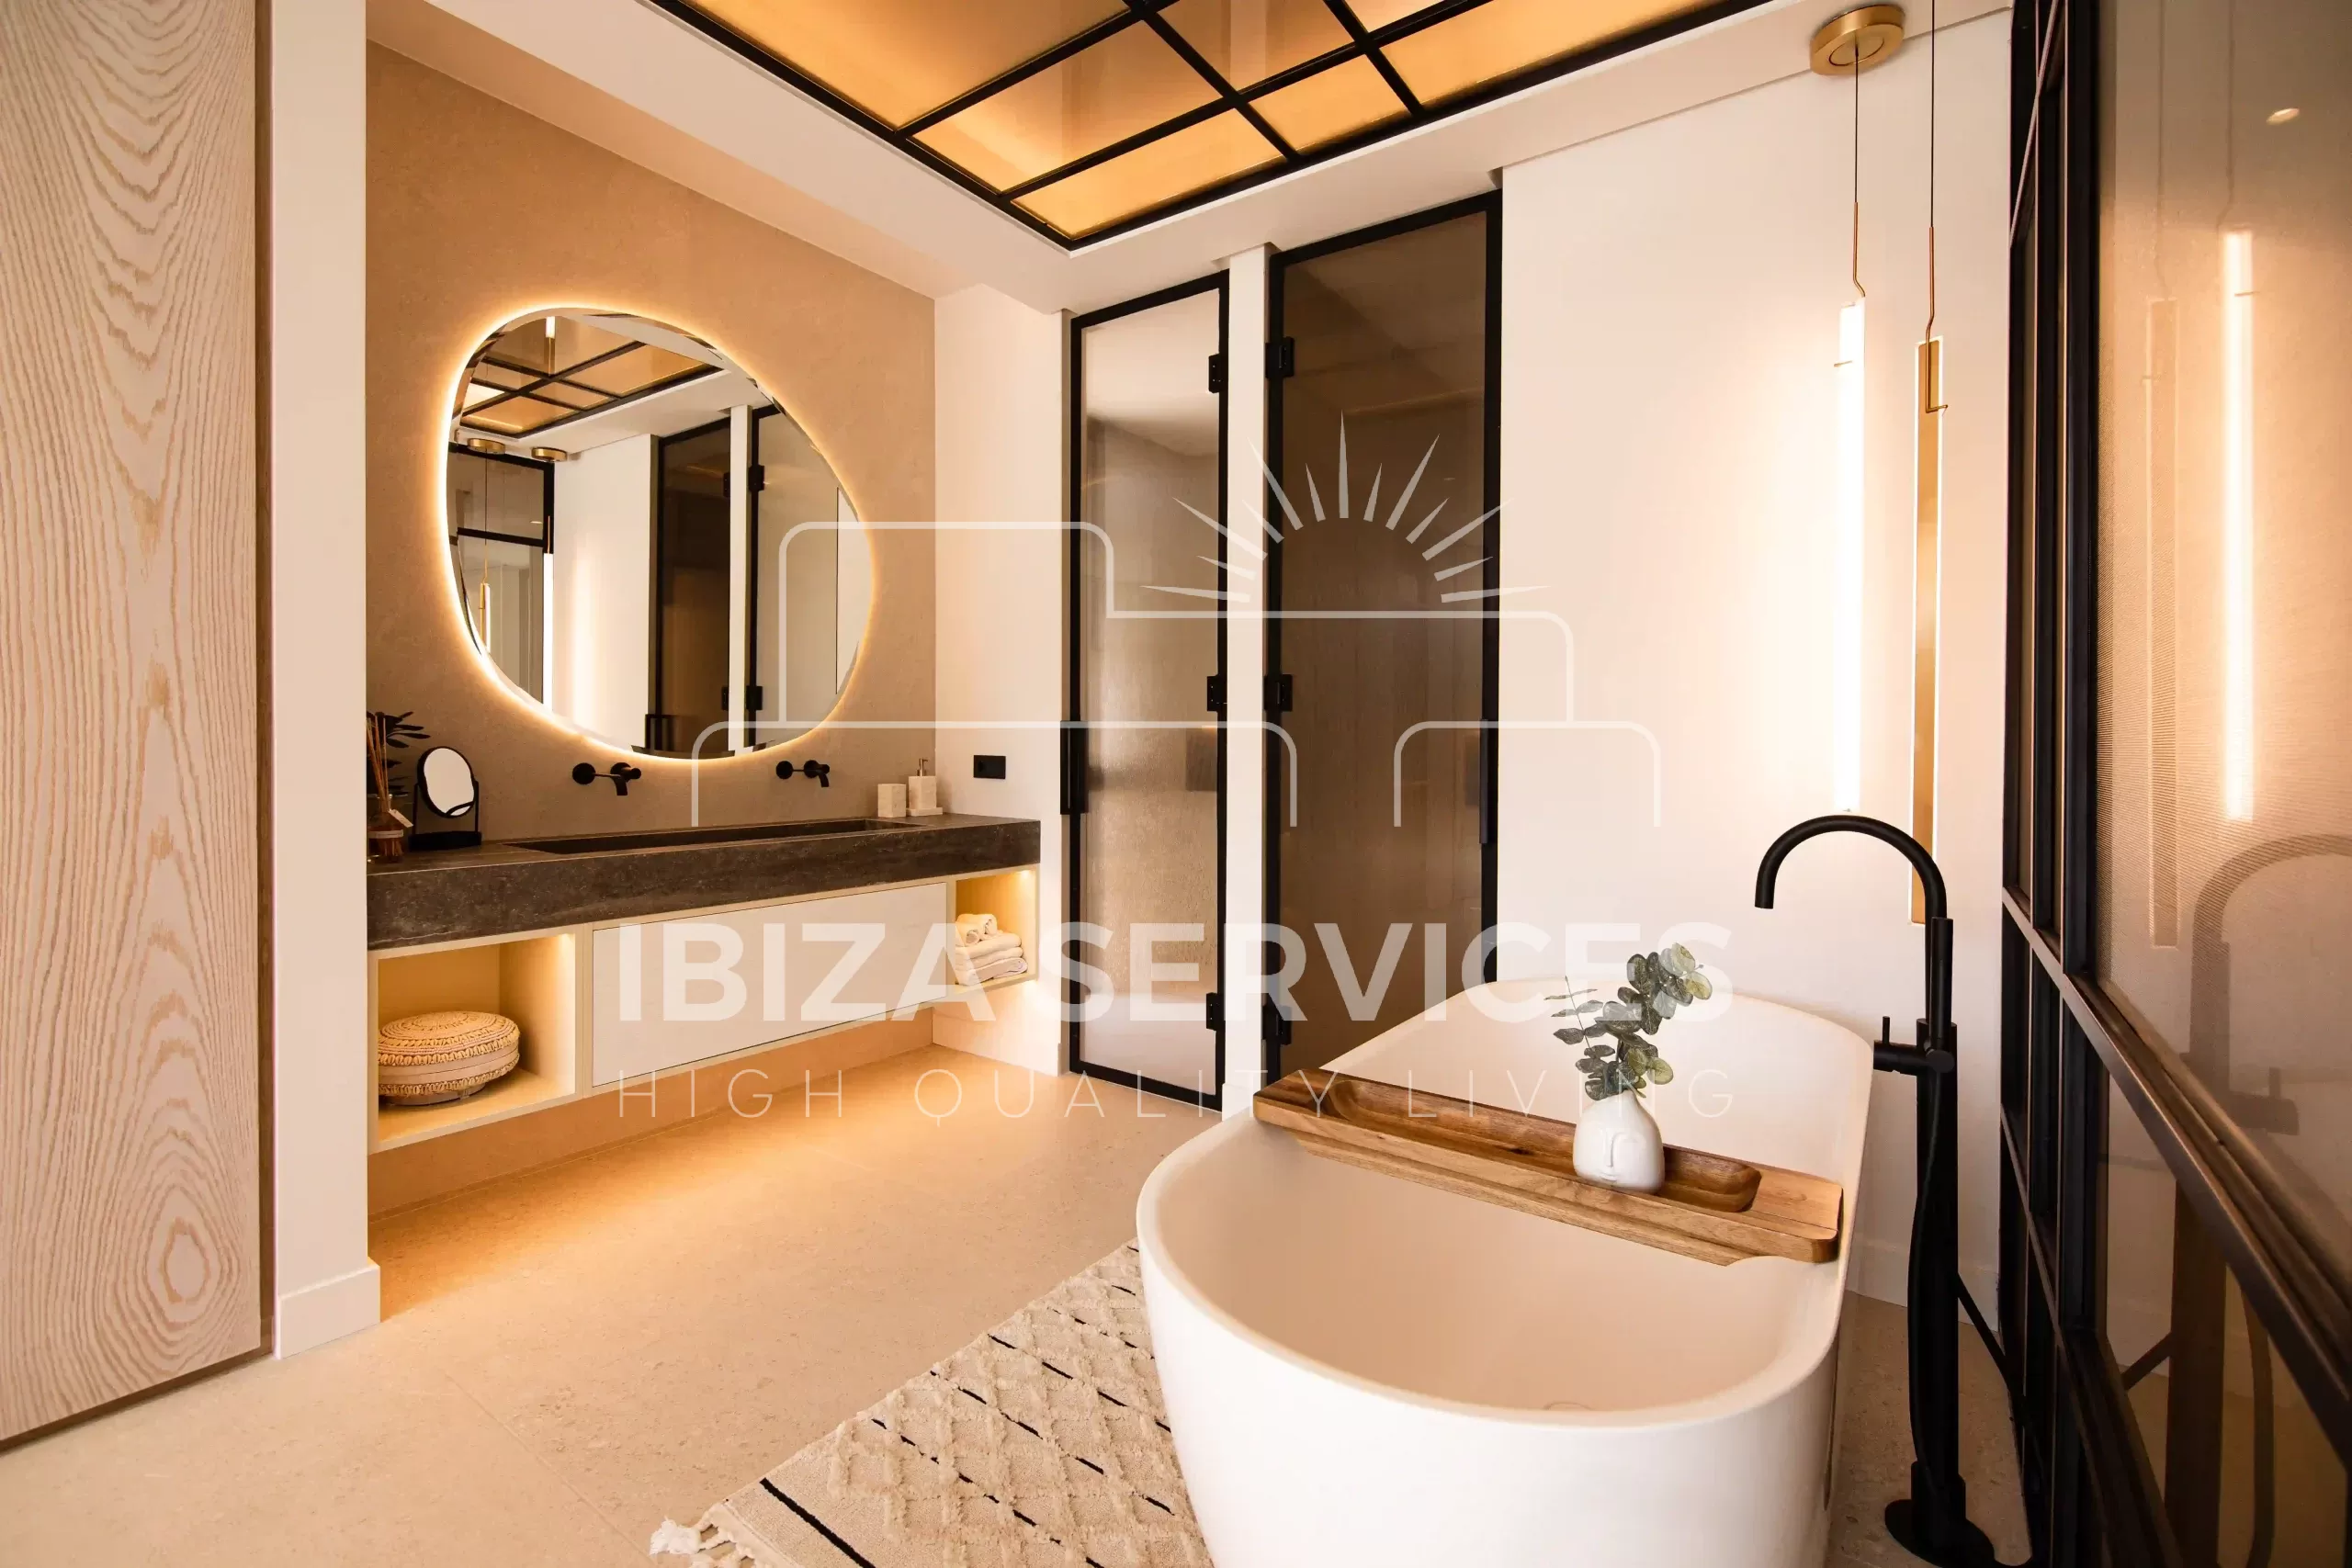 Exklusive Gelegenheit in Roca Llisa: Ihr Traumhaus auf Ibiza zu Vorverkaufspreisen